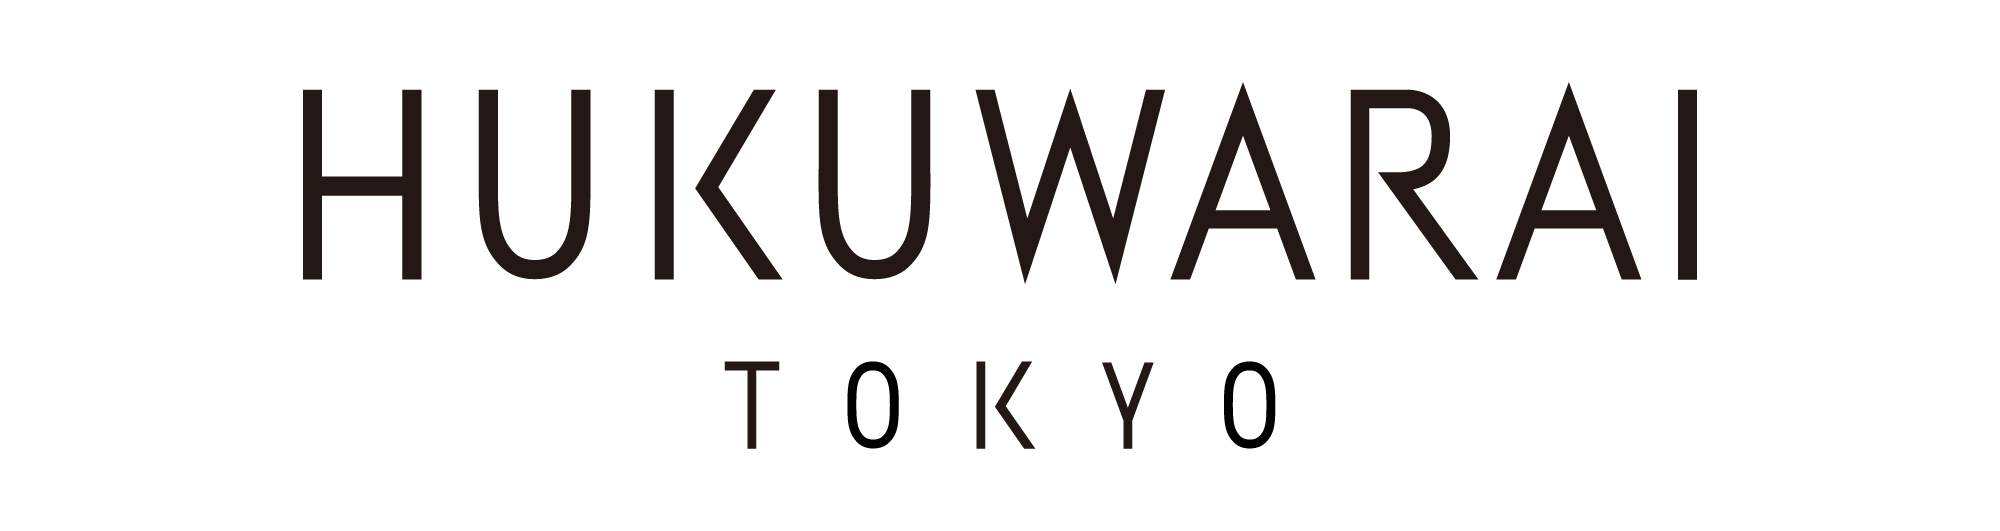 Hukuwarai